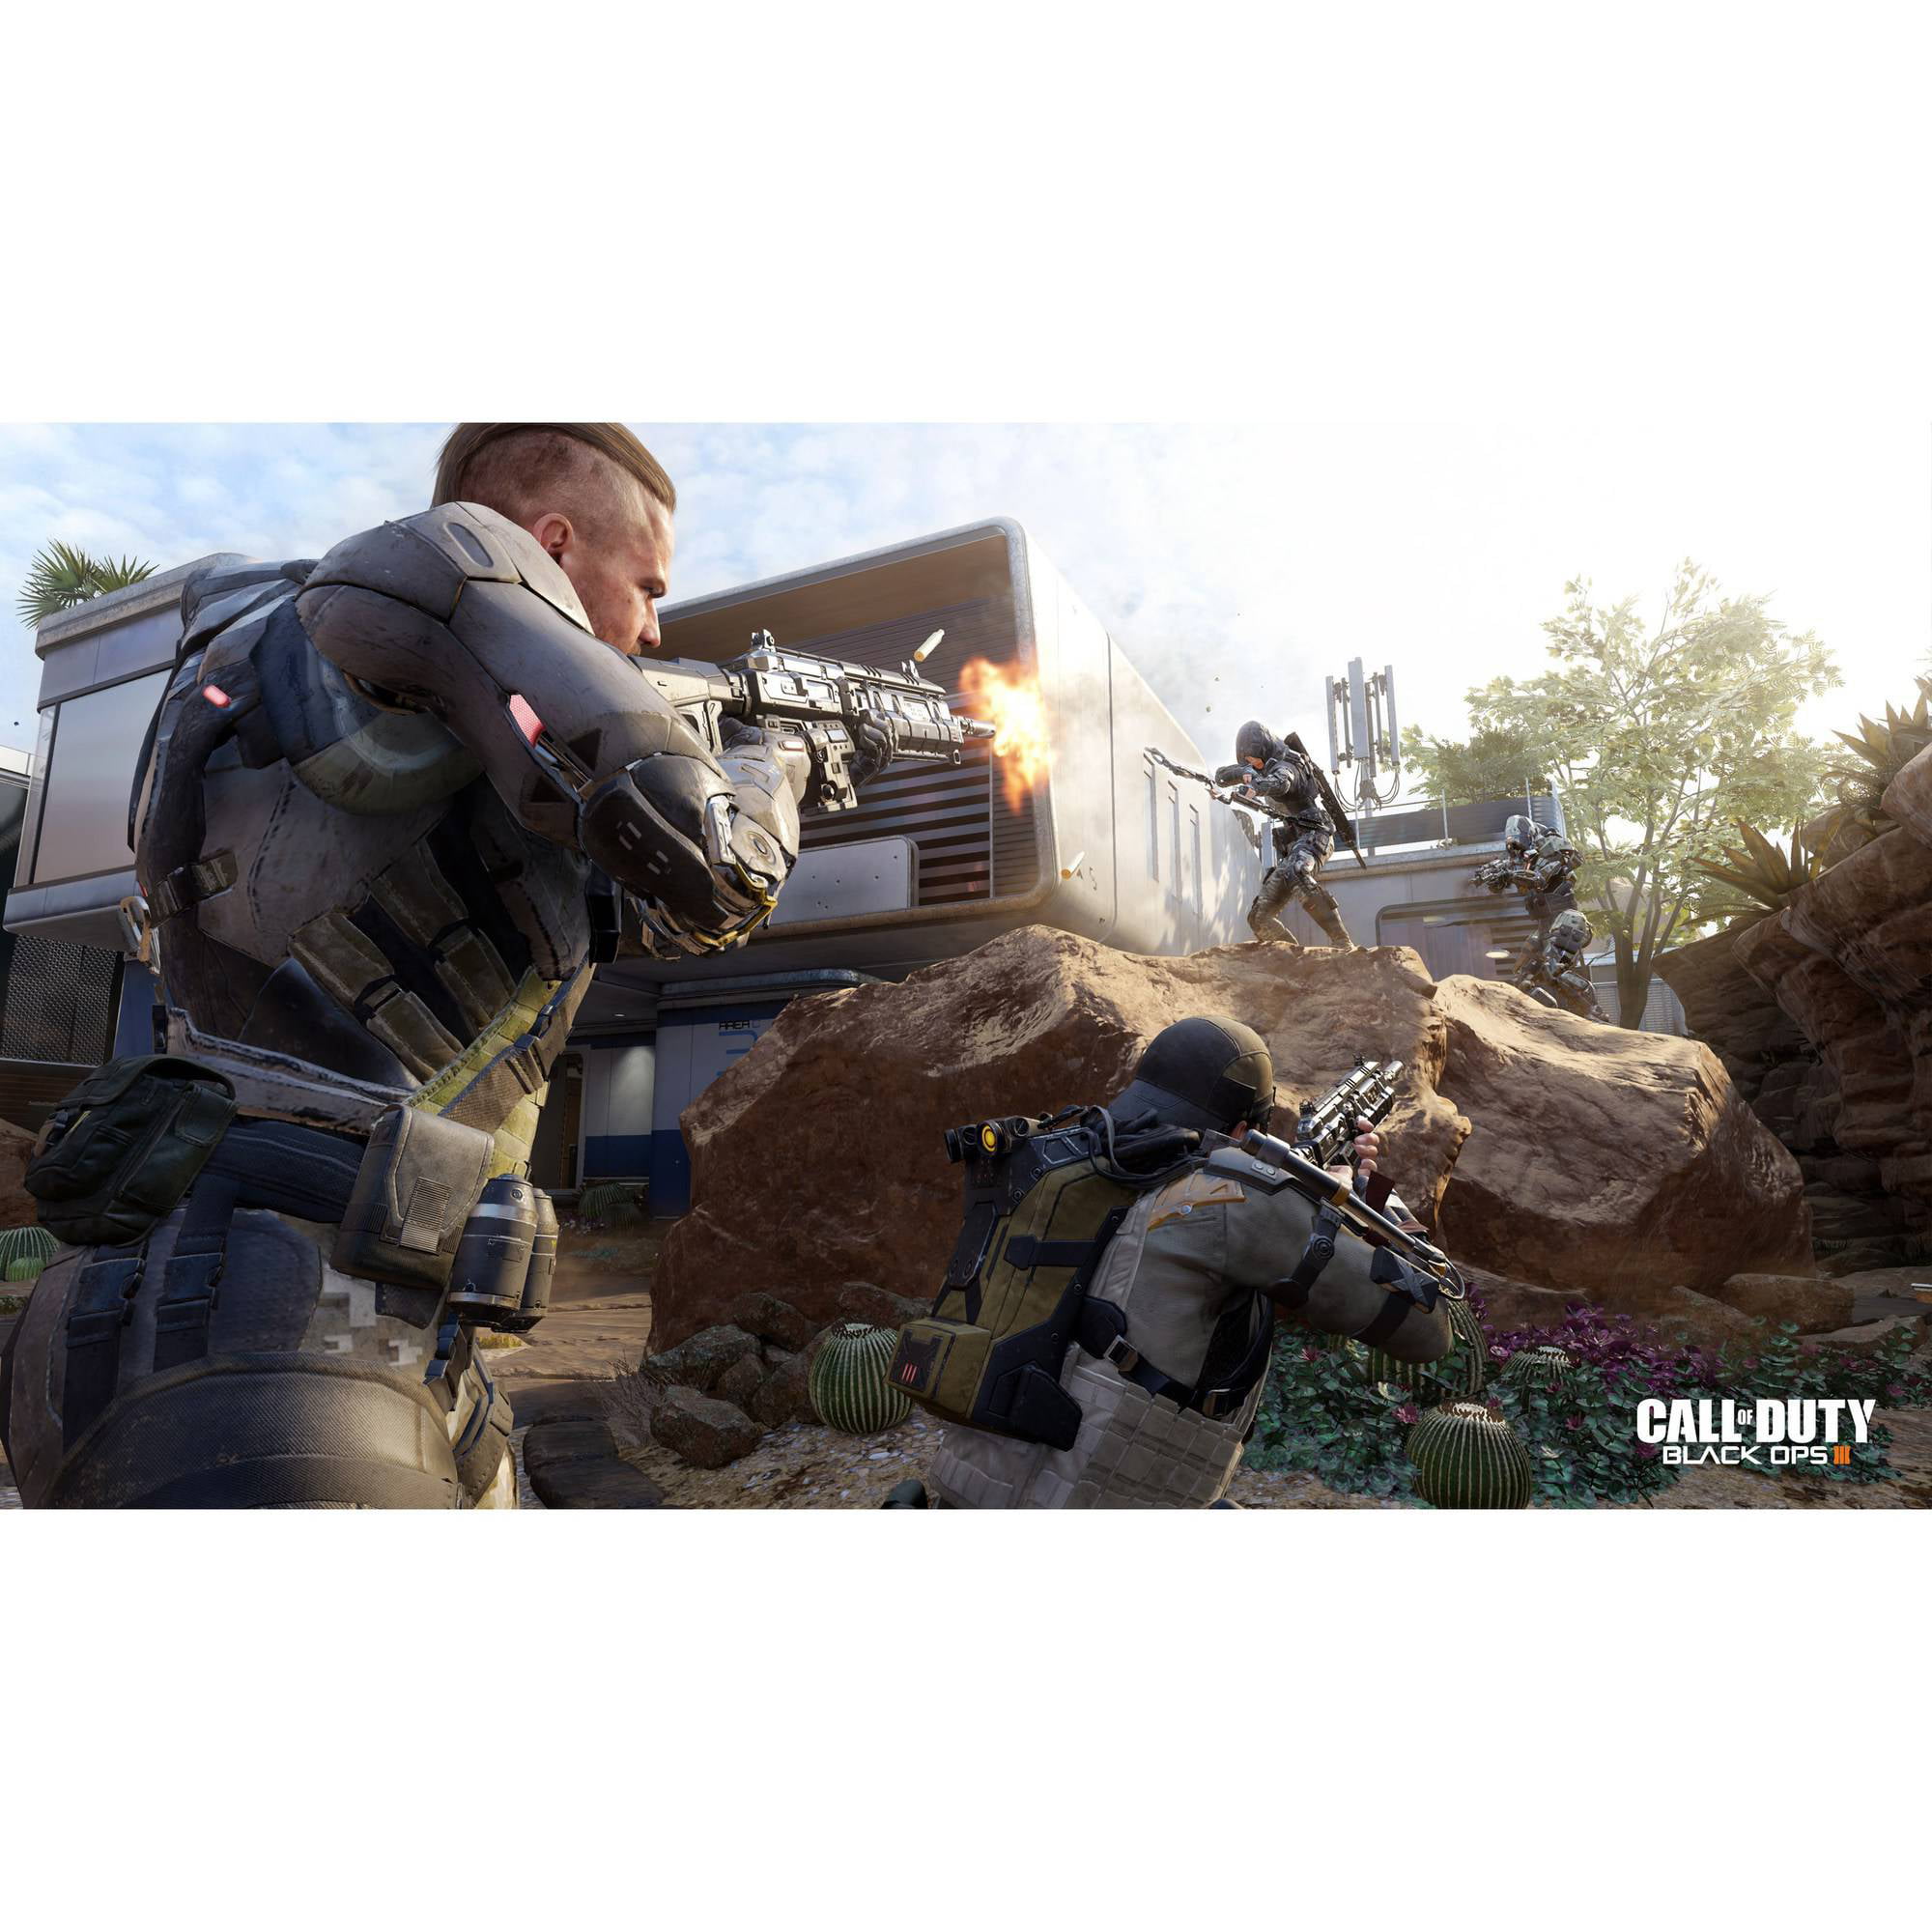 Ontwikkelen Waardeloos Storen Call of Duty: Black Ops 3, Activision, Xbox One, 047875874664 - Walmart.com